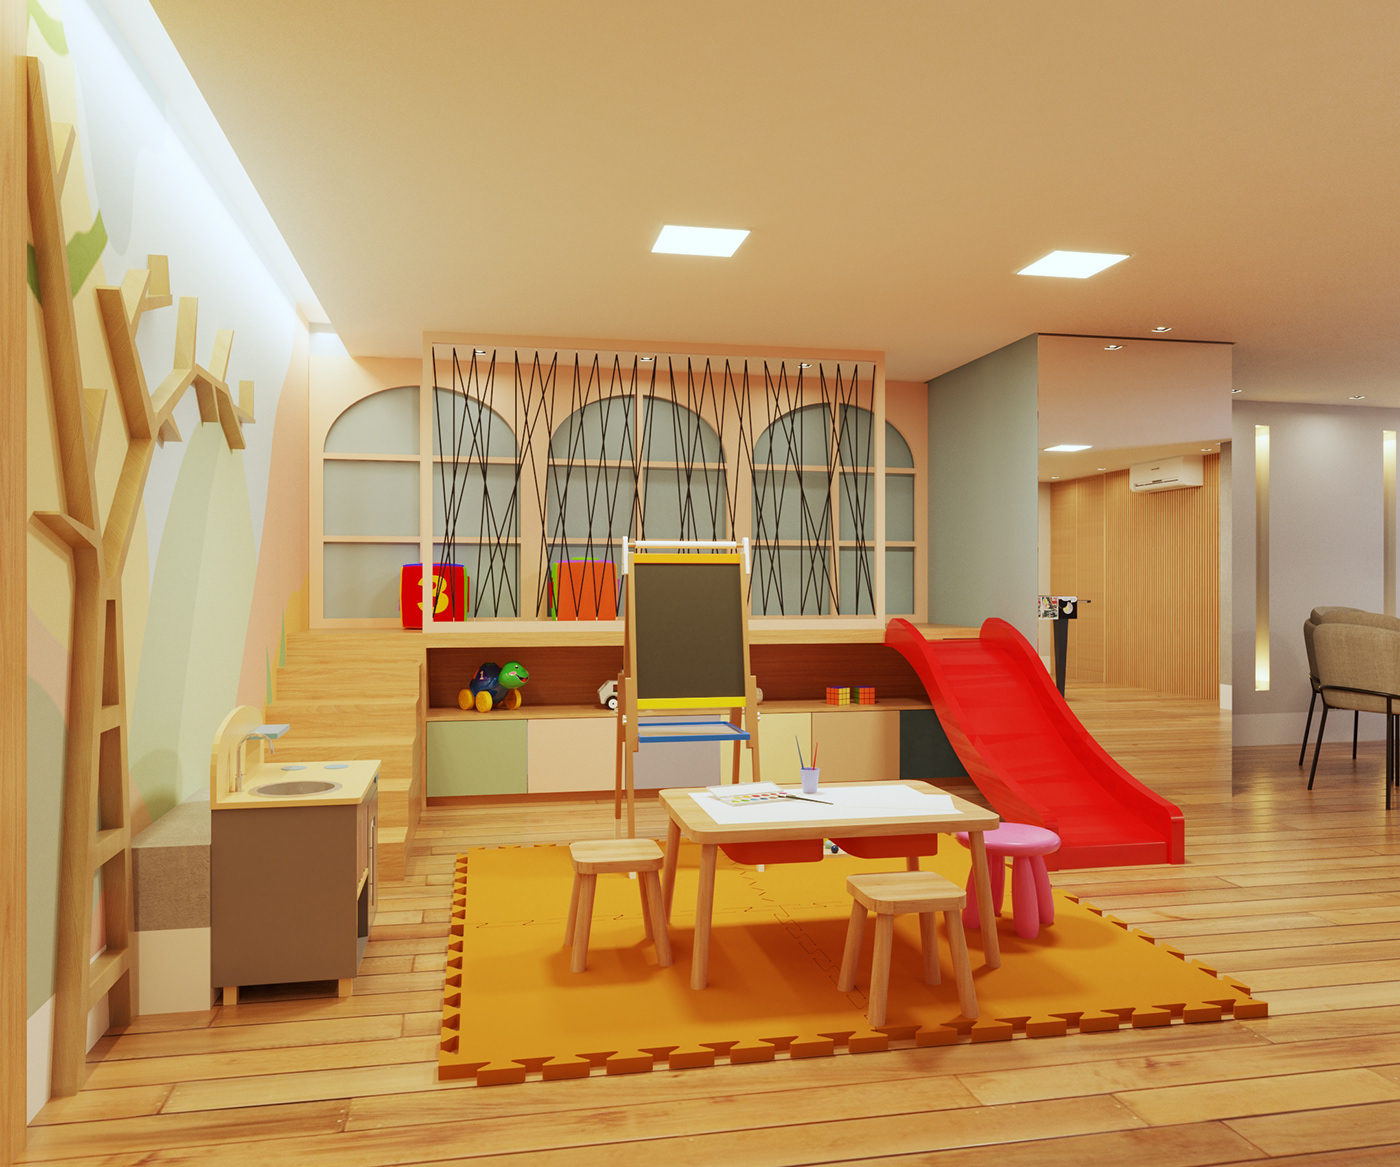 design Designer de interiores ARQUITETURA architecture Render visualization interior design  vray SketchUP 3D